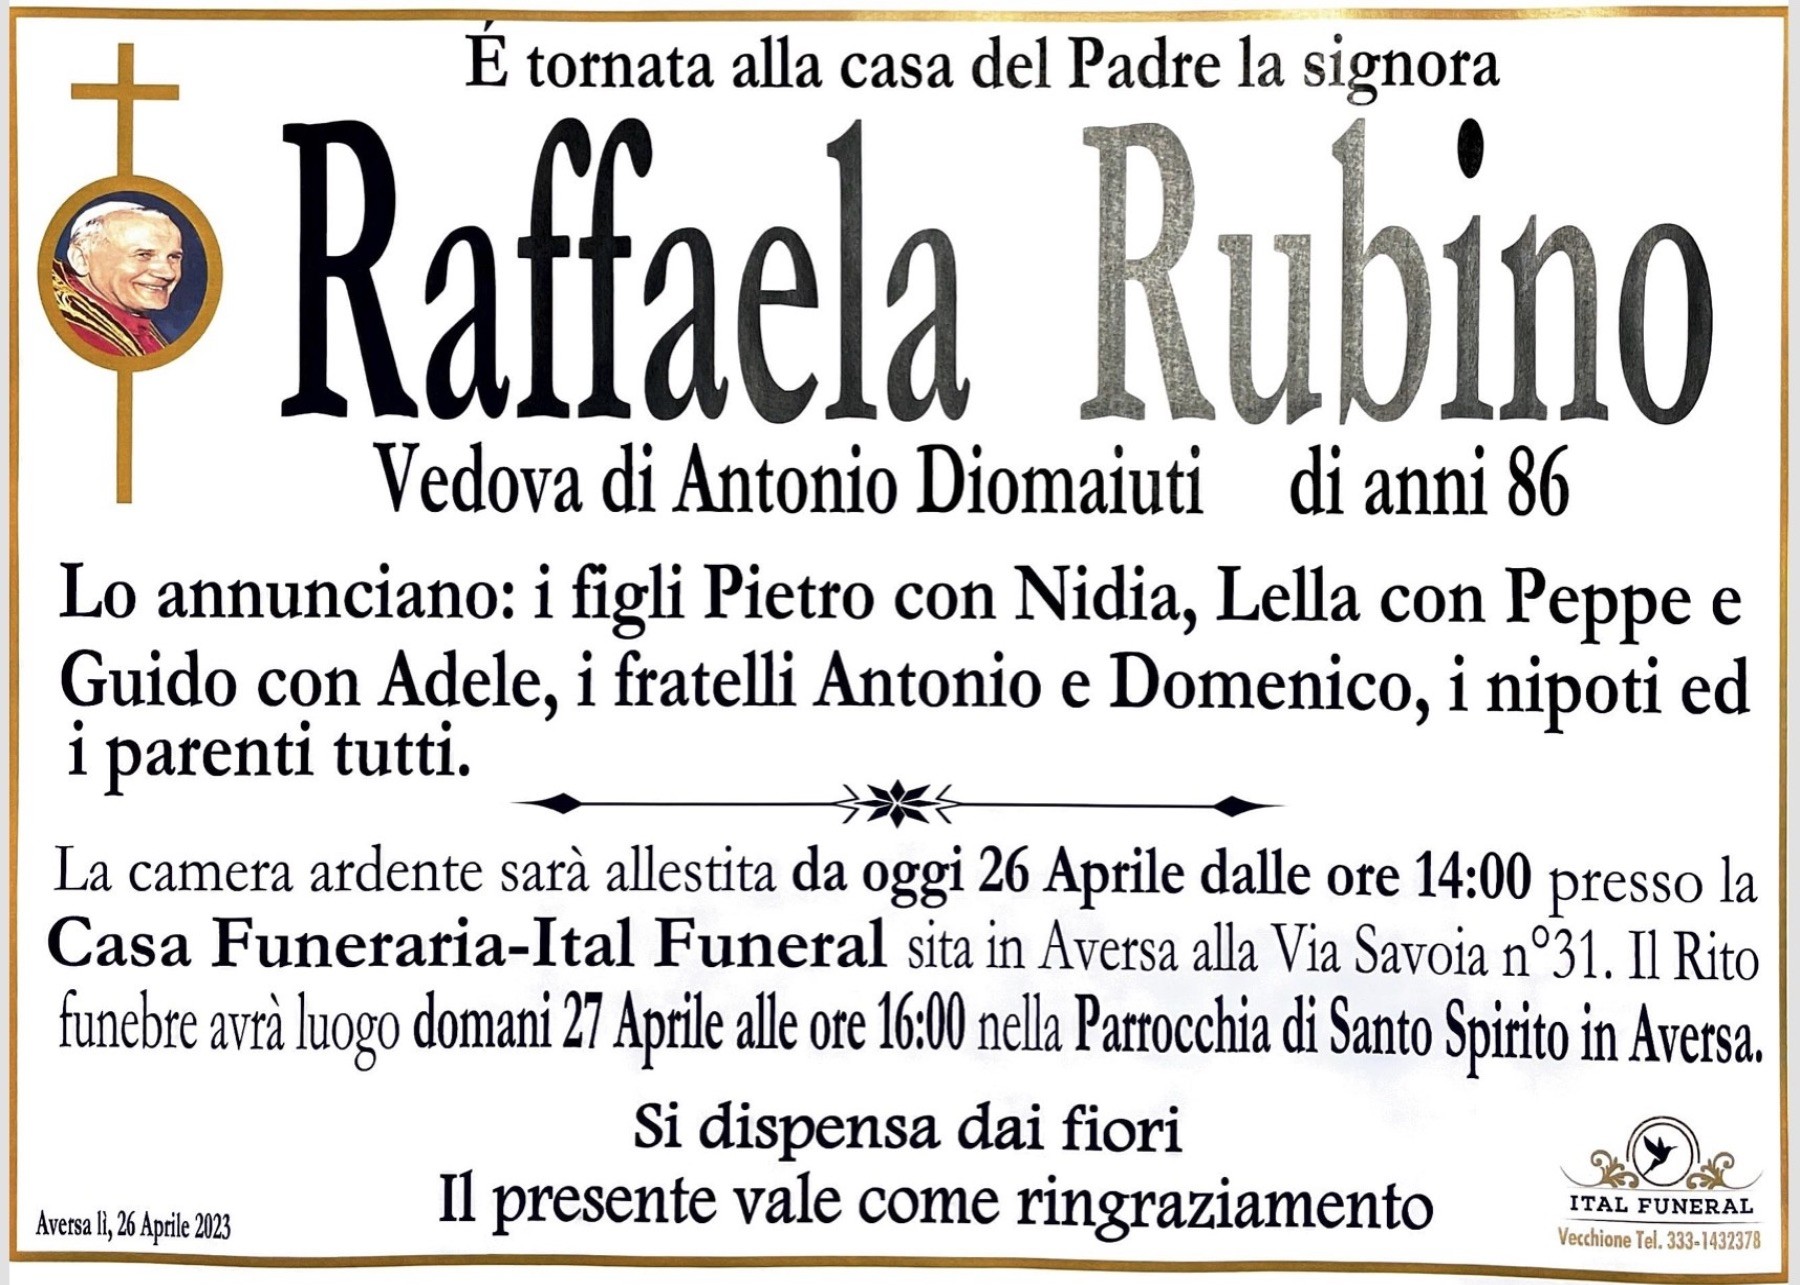 Raffaela Rubino